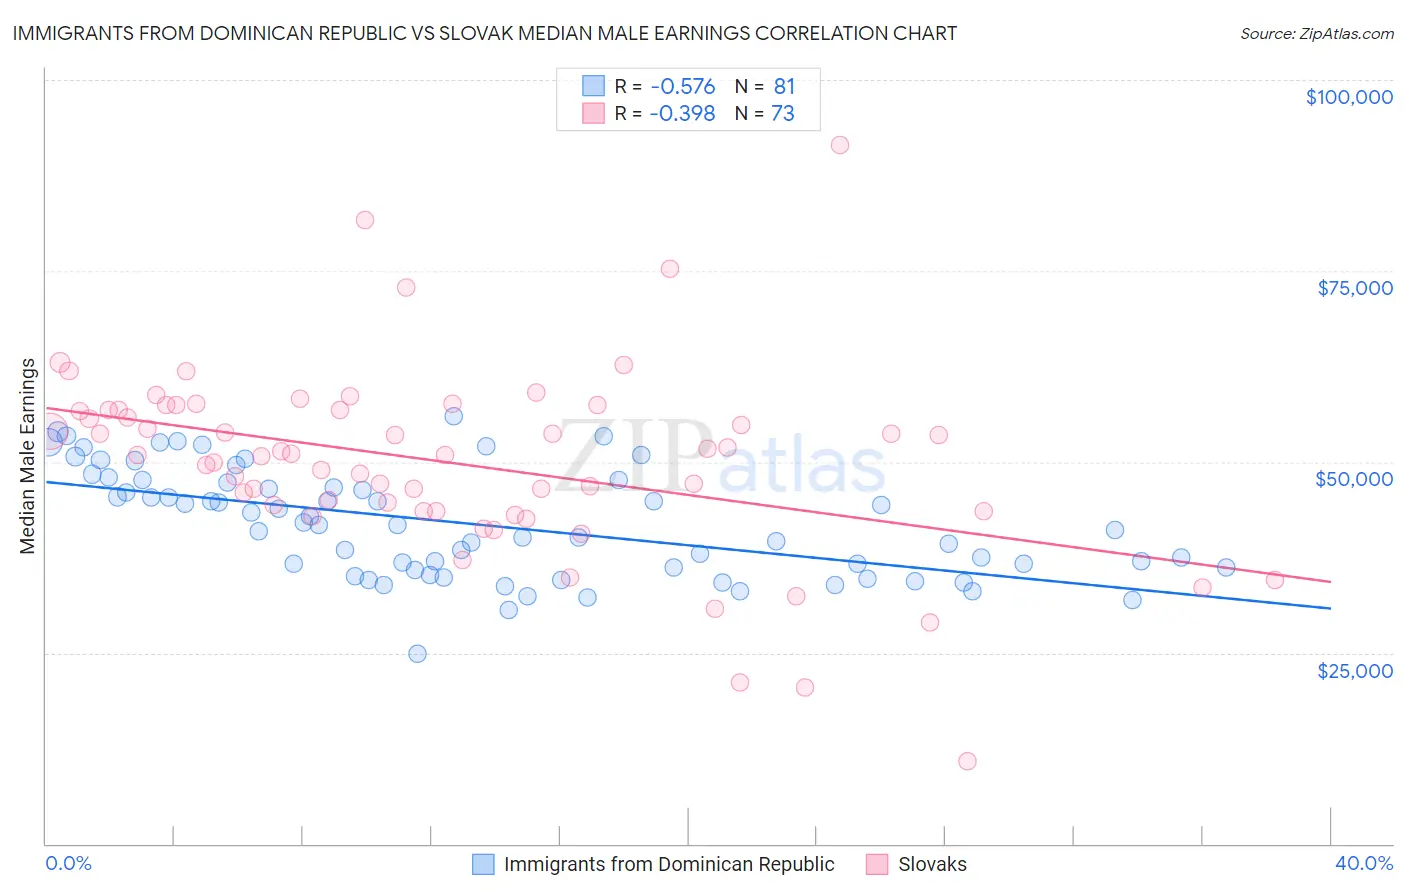 Immigrants from Dominican Republic vs Slovak Median Male Earnings